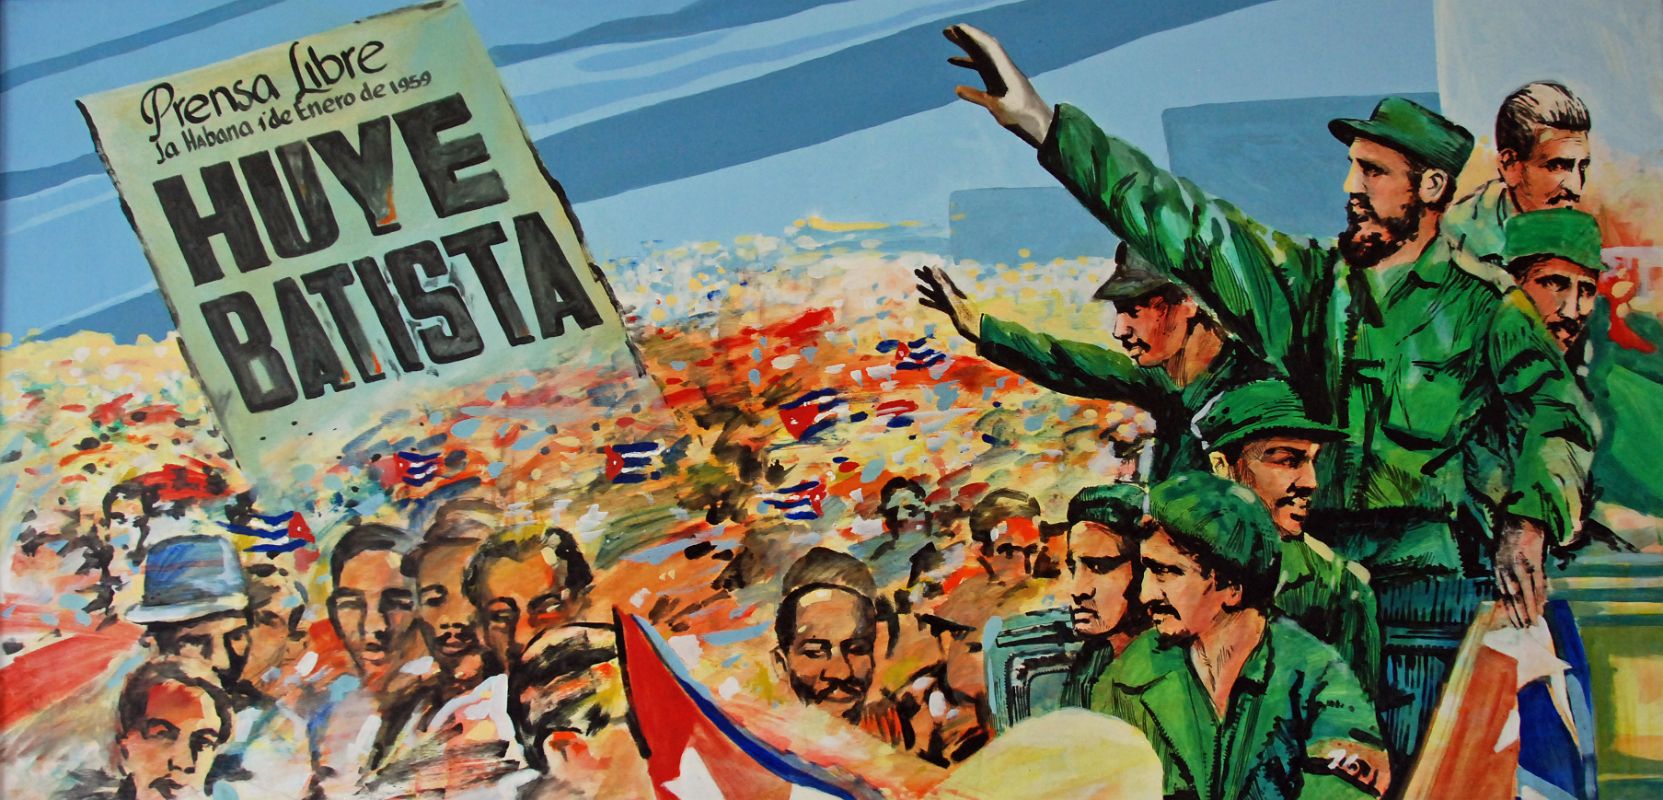 86 Cuba - Havana Centro - Museo de la Revolucion - revolutionary mural with the slogan Prensa Libre La Habana I de Enero de 1959 Huye Batista